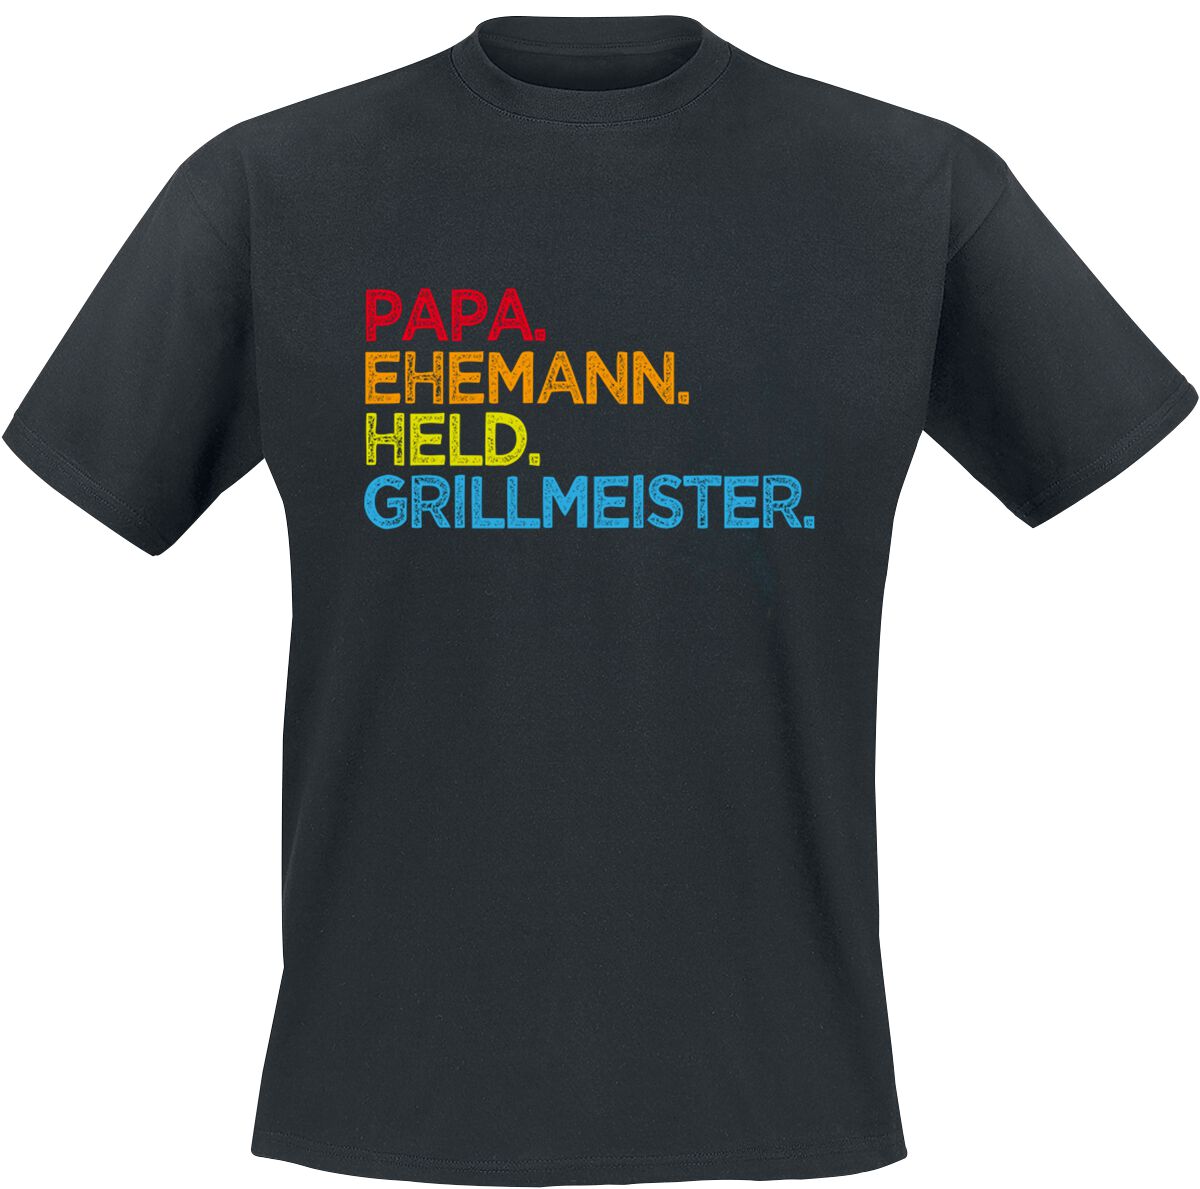 Familie & Freunde T-Shirt - Papa. Ehemann. Held. Grillmeister - S bis 5XL - für Männer - Größe XXL - schwarz